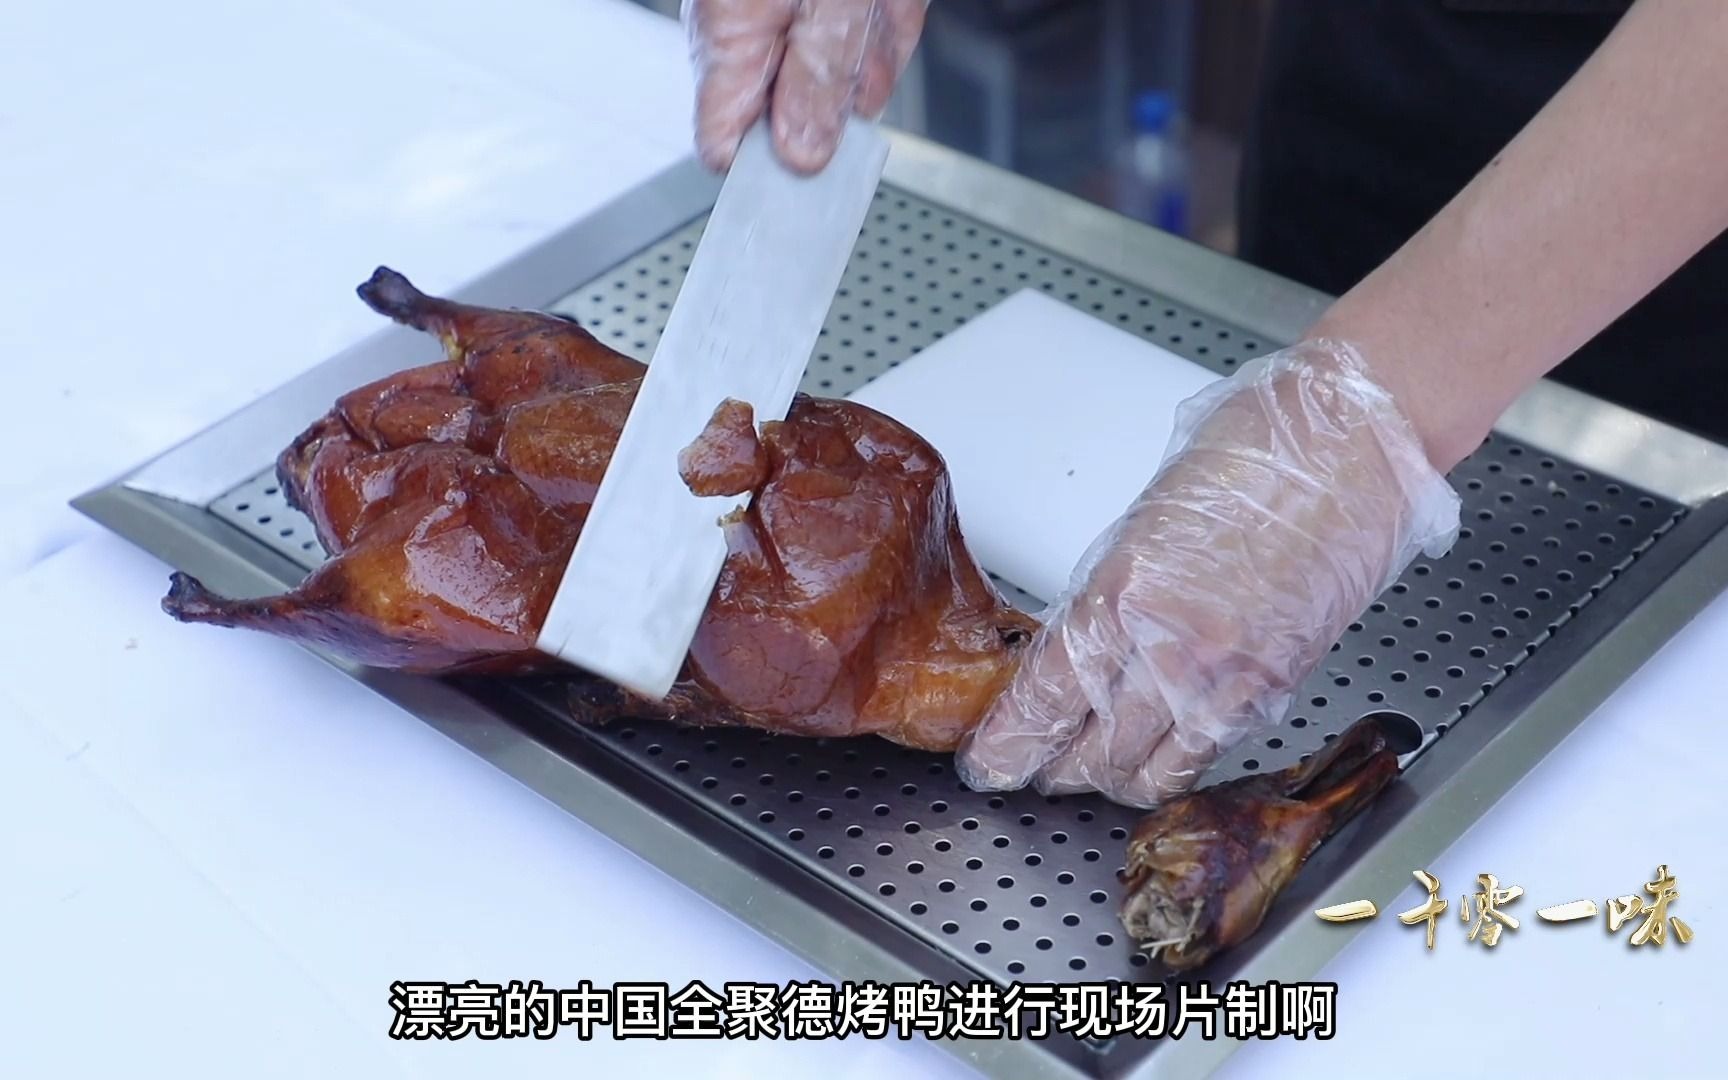 烤鸭厨师北京烤鸭架子上烤鸭挂着的烤鸭旅游美食图片下载 - 觅知网